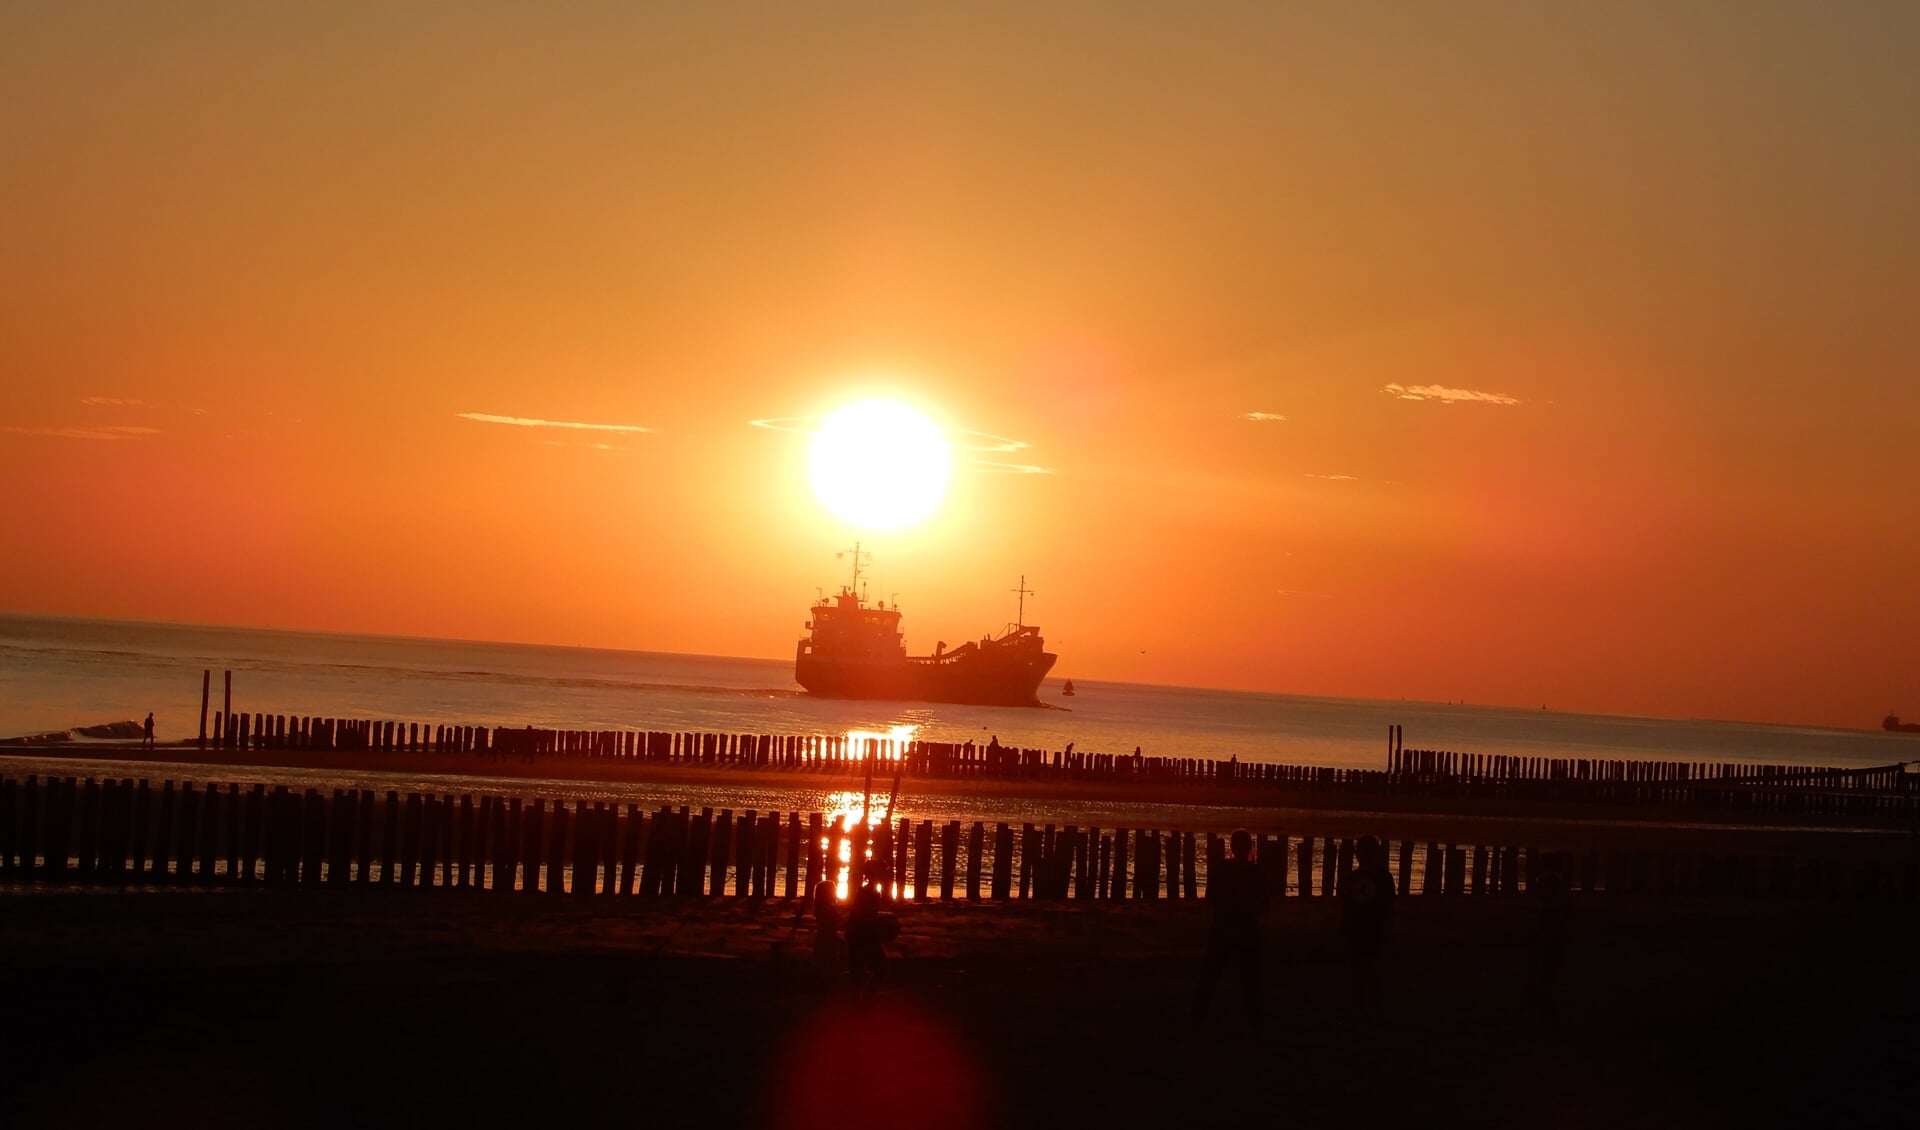 De Zeeuwse zon vangt een schip... foto: Lambert Verhoeven